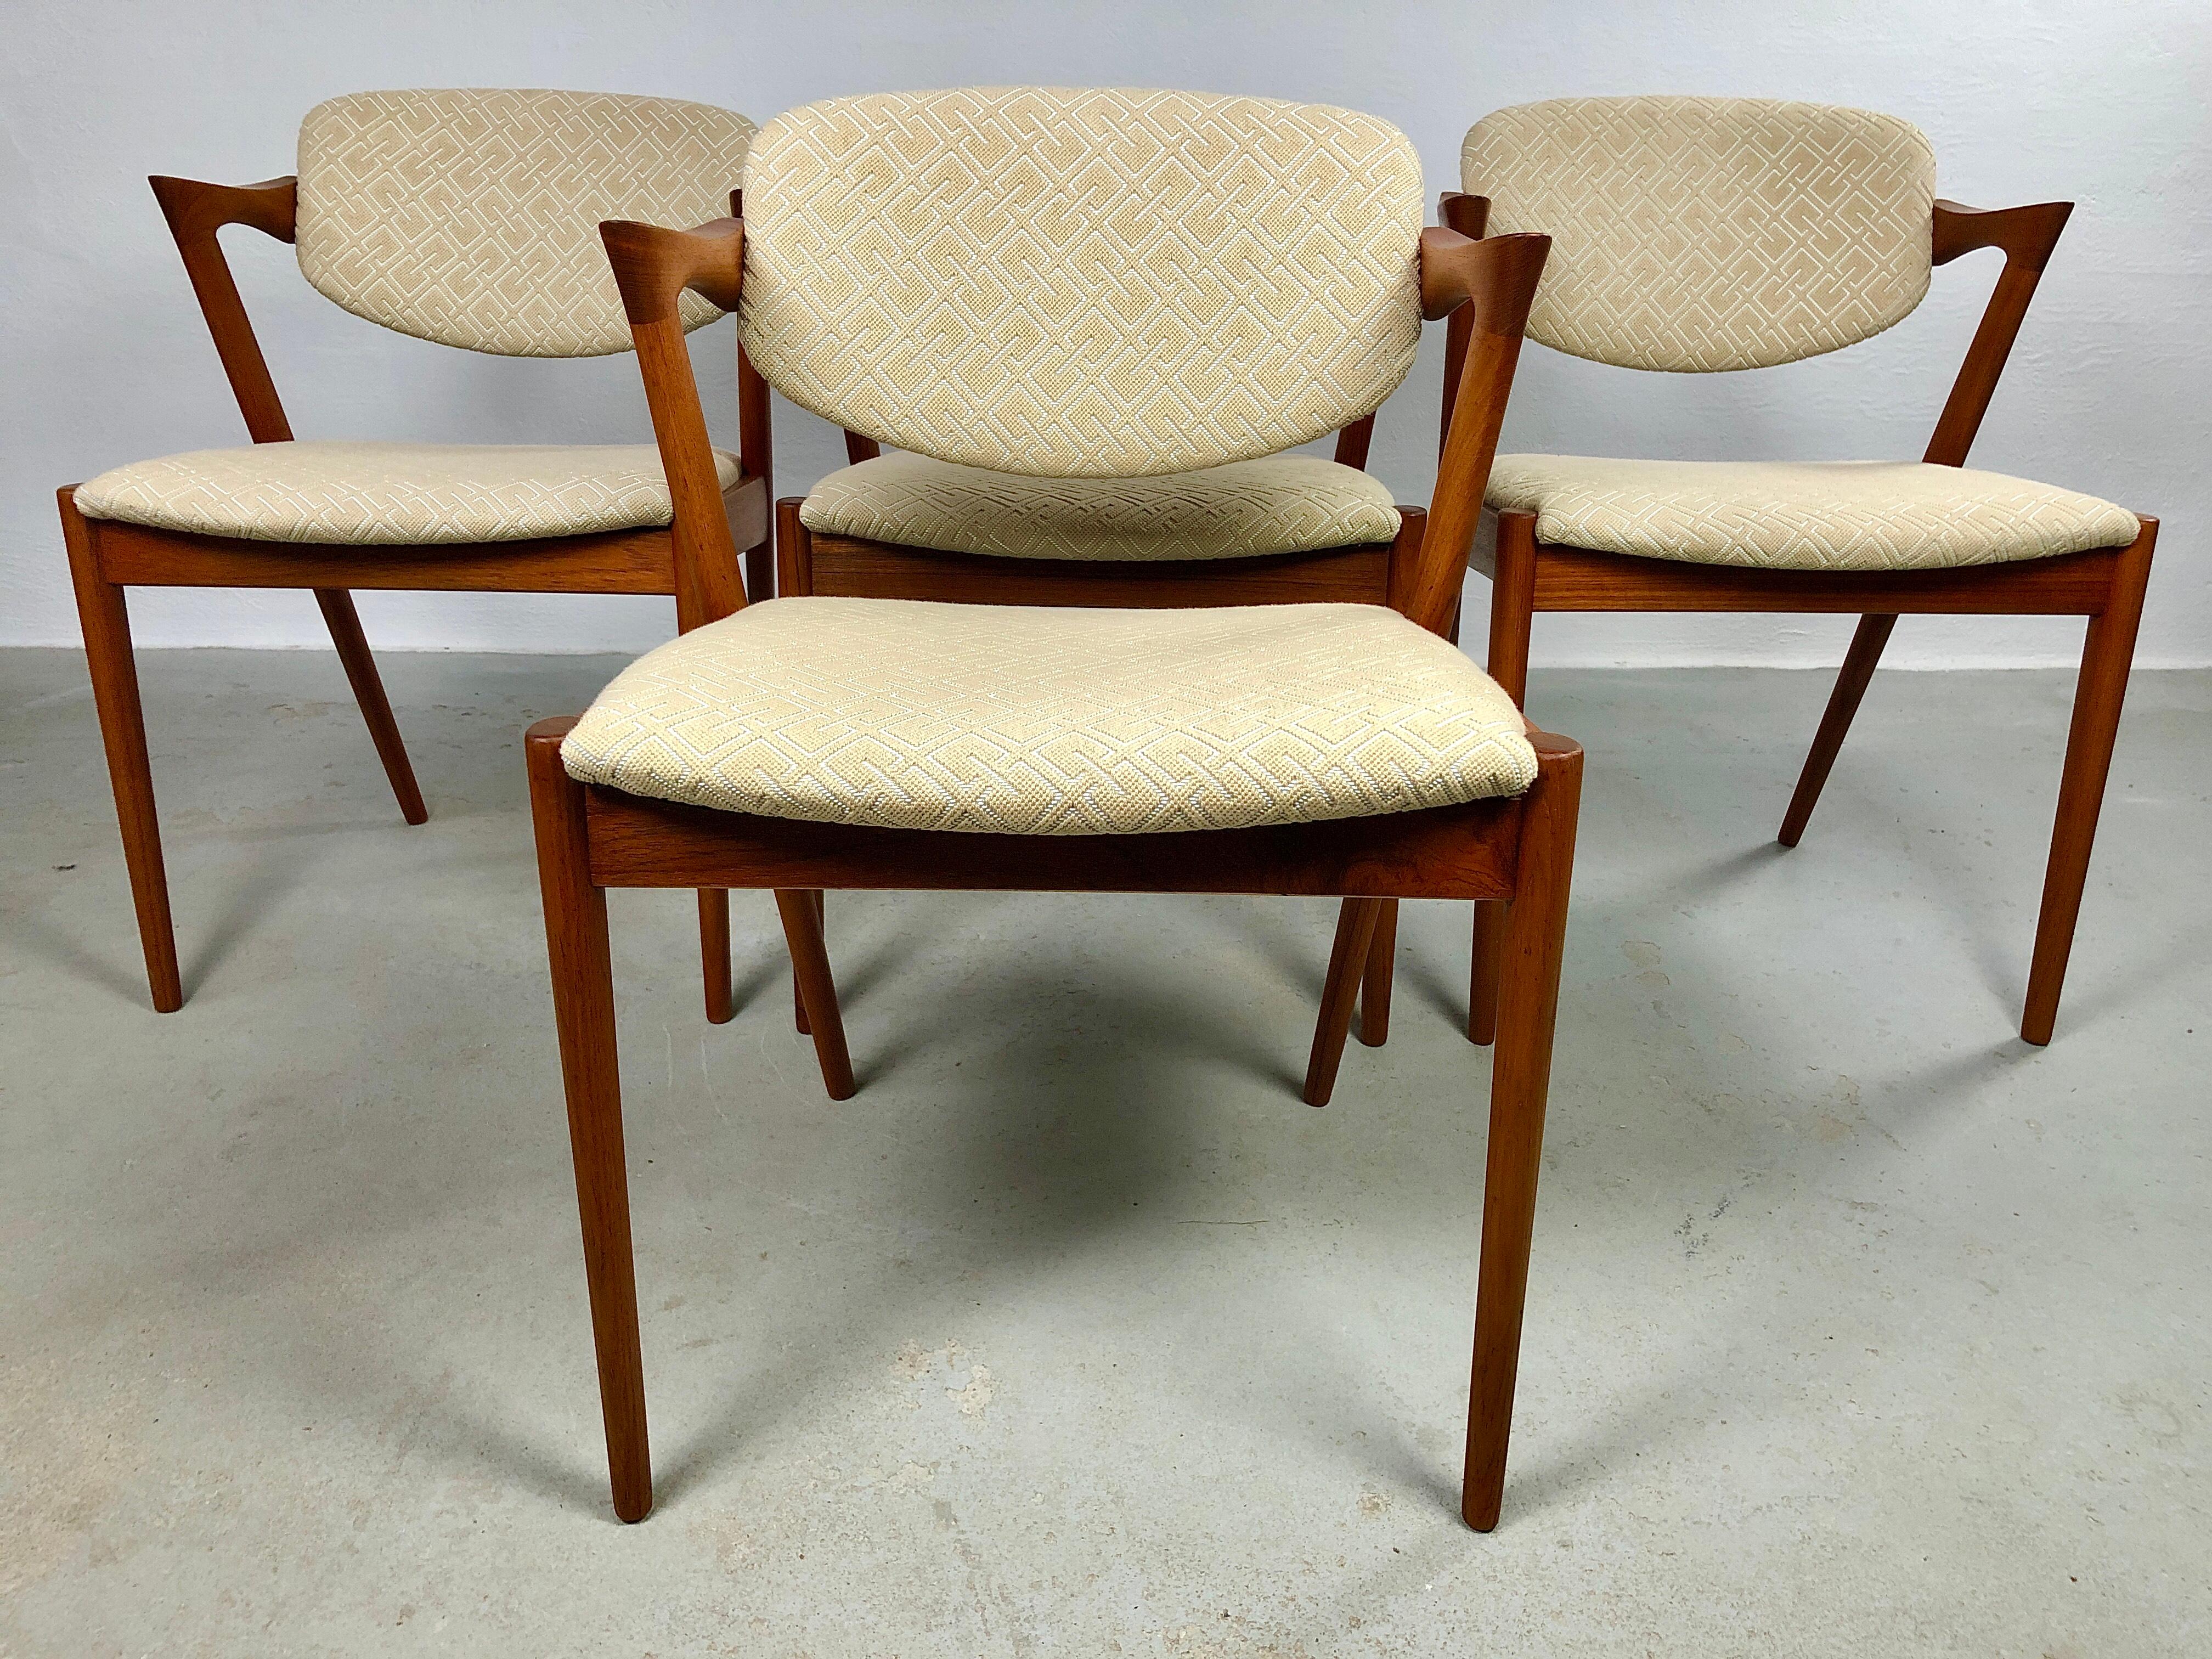 4 Stühle aus Teakholz Modell 42 mit drehbarer Rückenlehne von Kai Kristiansen für Schous Møbelfabrik.

Die Stühle haben Kai Kristiansens typisches leichtes und elegantes, aber dennoch kühnes Design, mit dem sie sich mühelos dort einfügen, wo man sie